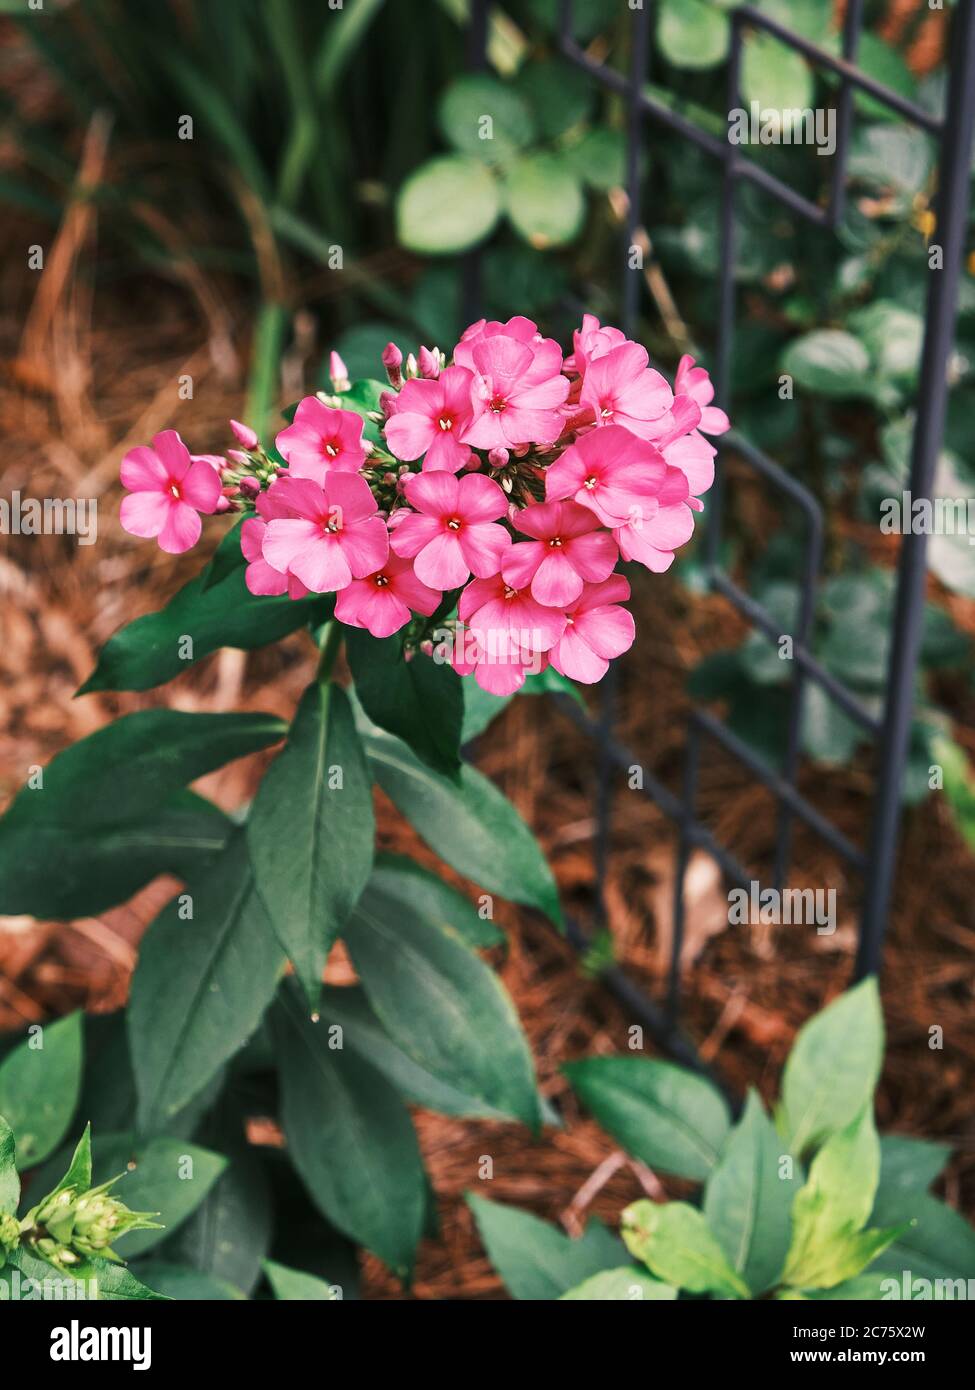 Rosa oder rote Phlox, eine blühende mehrjährige Hausgartenpflanze mit auffälligen hellen Farbblüten. Stockfoto